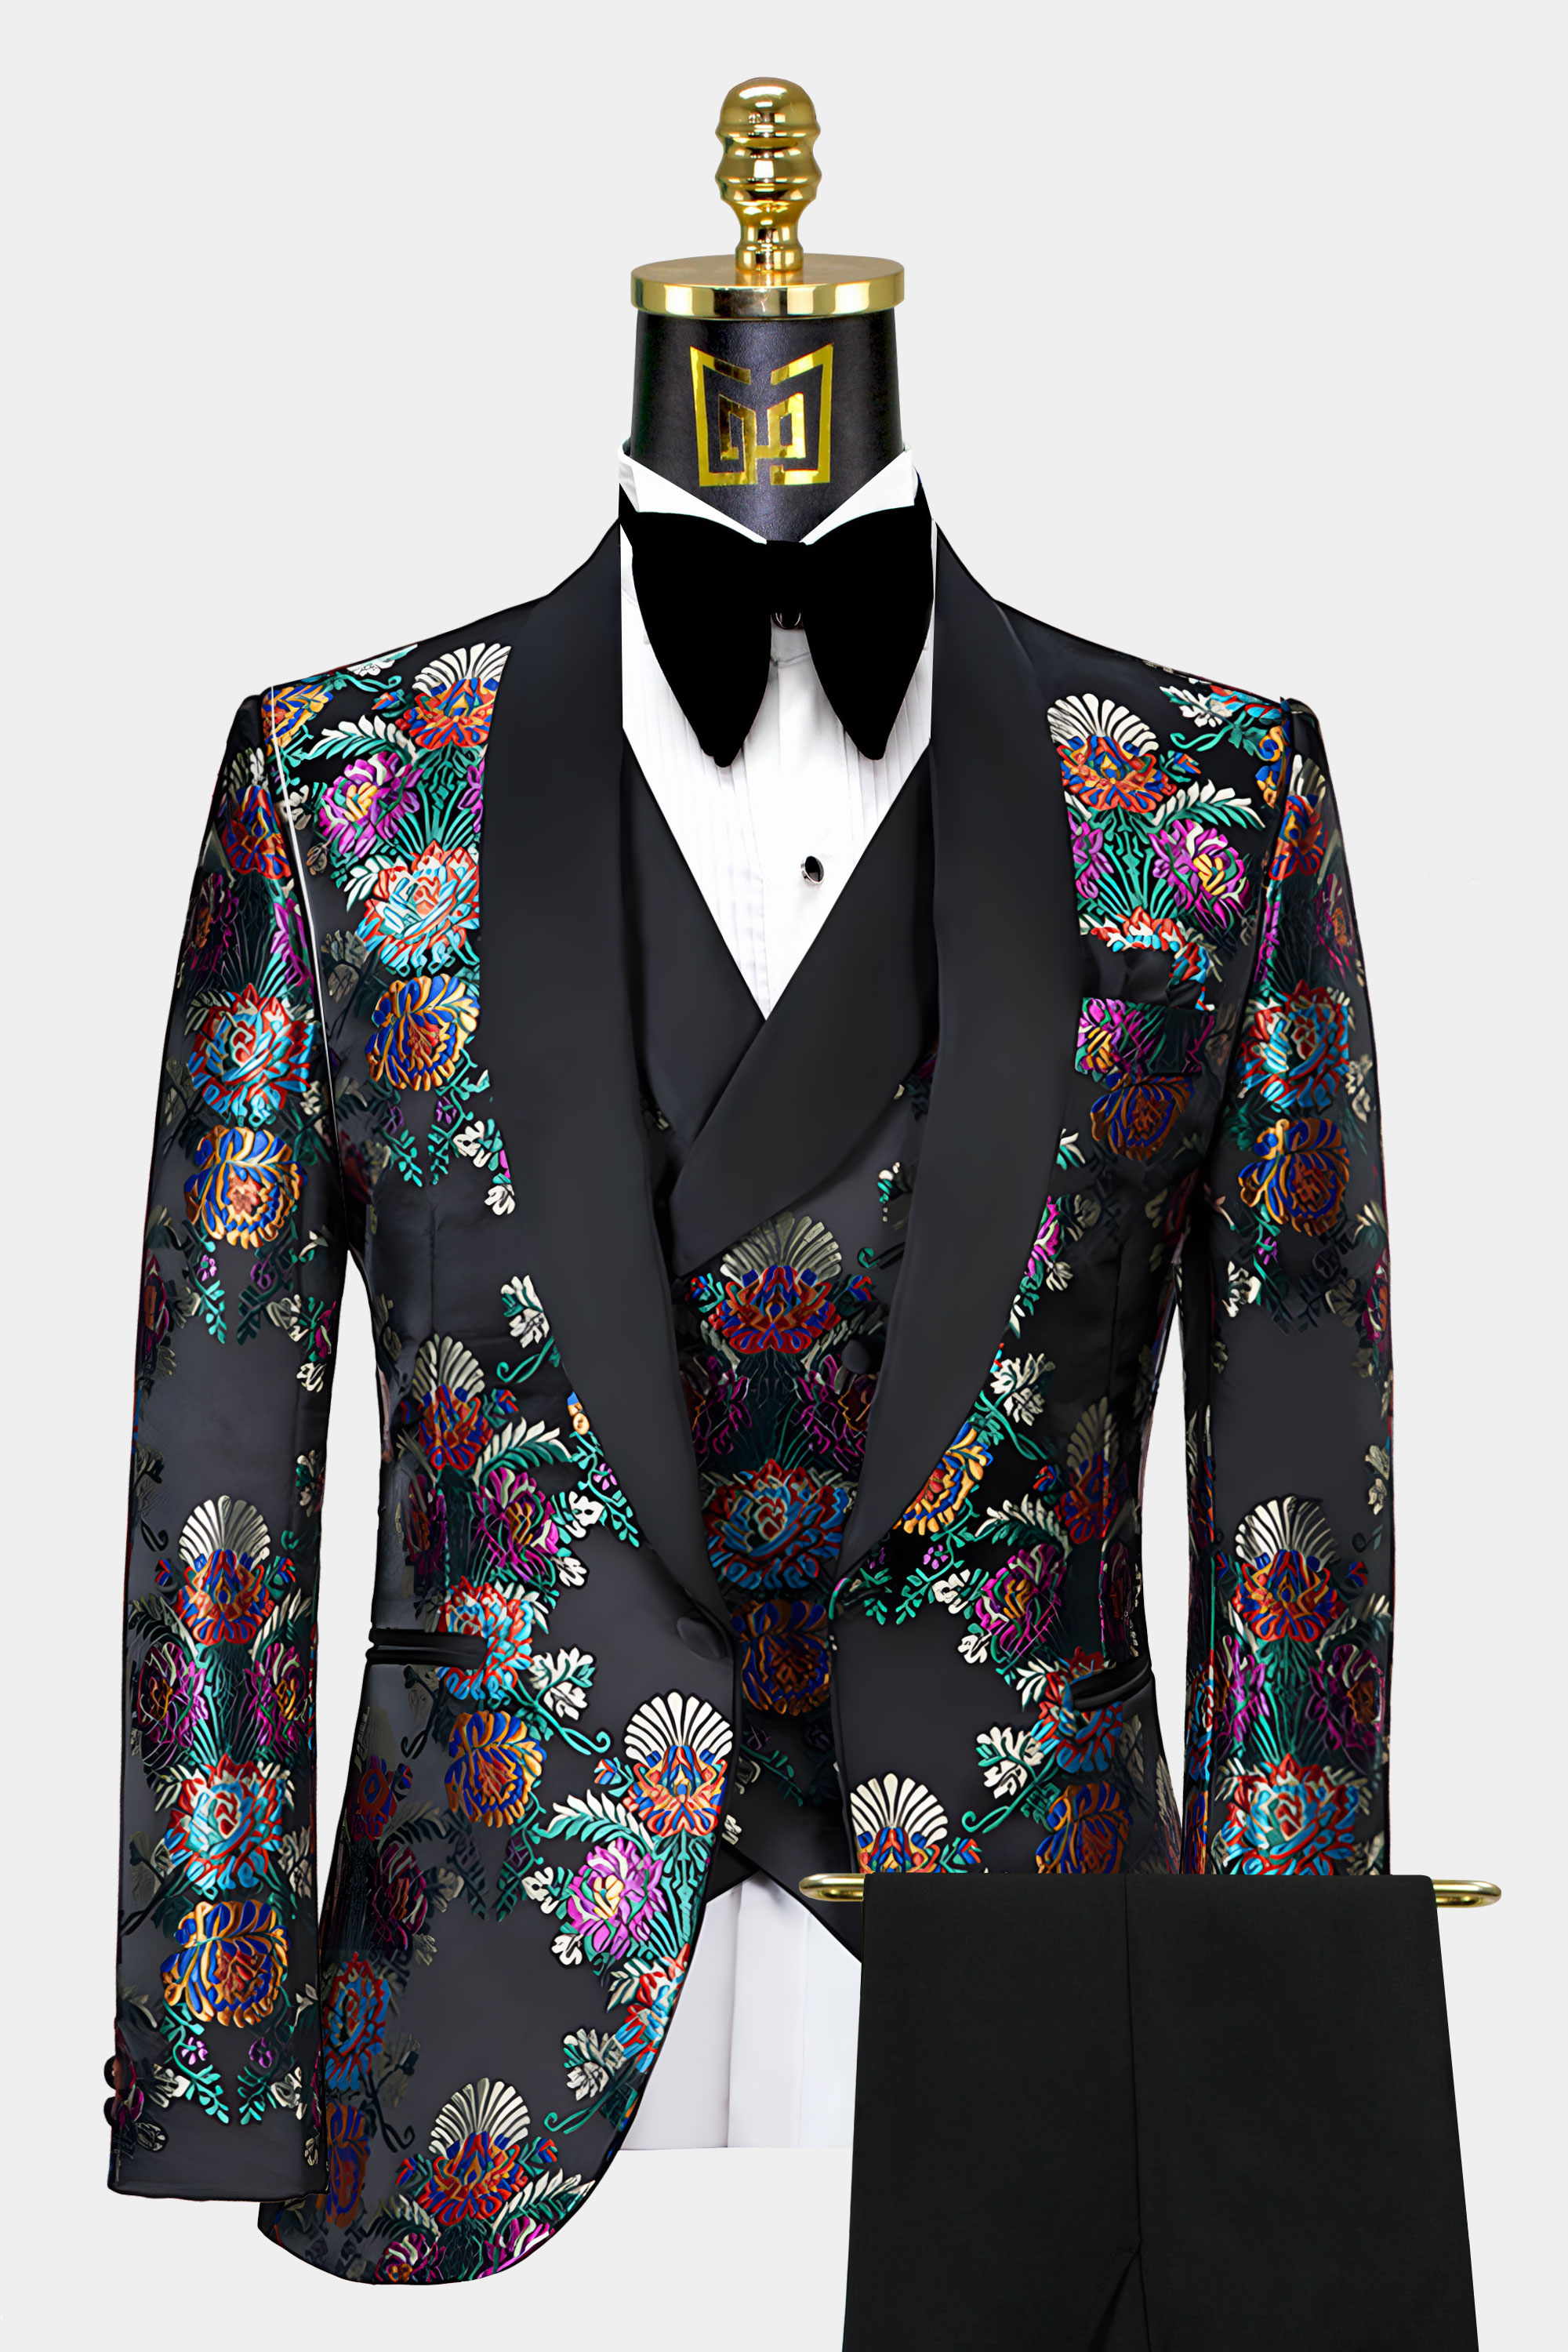 MultiColor-Tuxedo-Groom-Wedding-Prom-Suit-from-Gentlemansguru.com